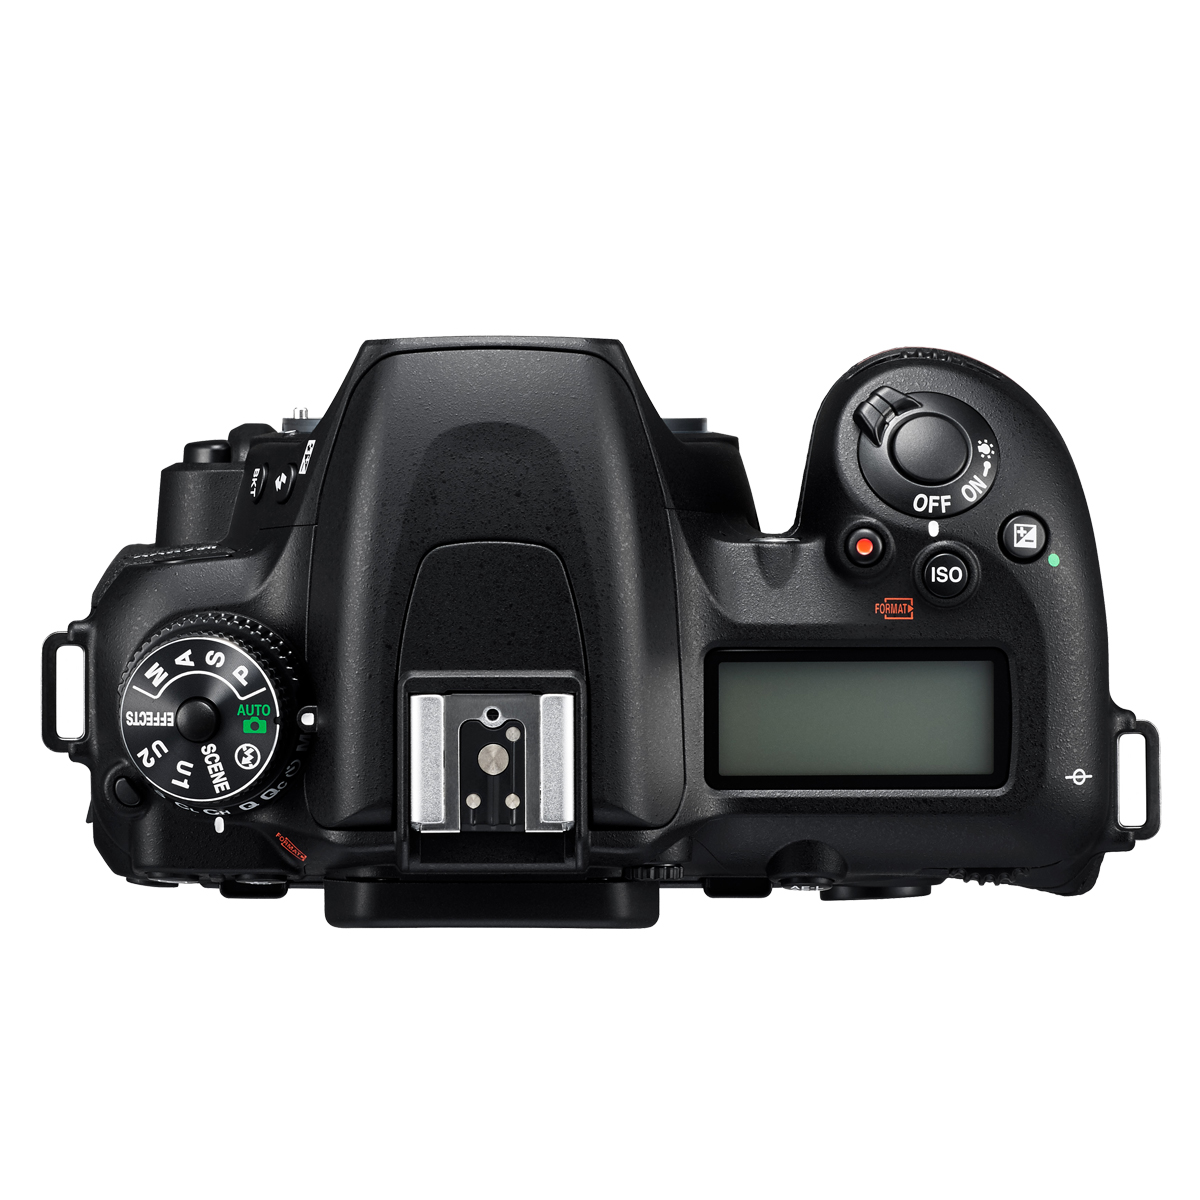 Digitalkameragehäuse Spiegelreflexkamera D NIKON WLAN- Black, 7500 LCD,